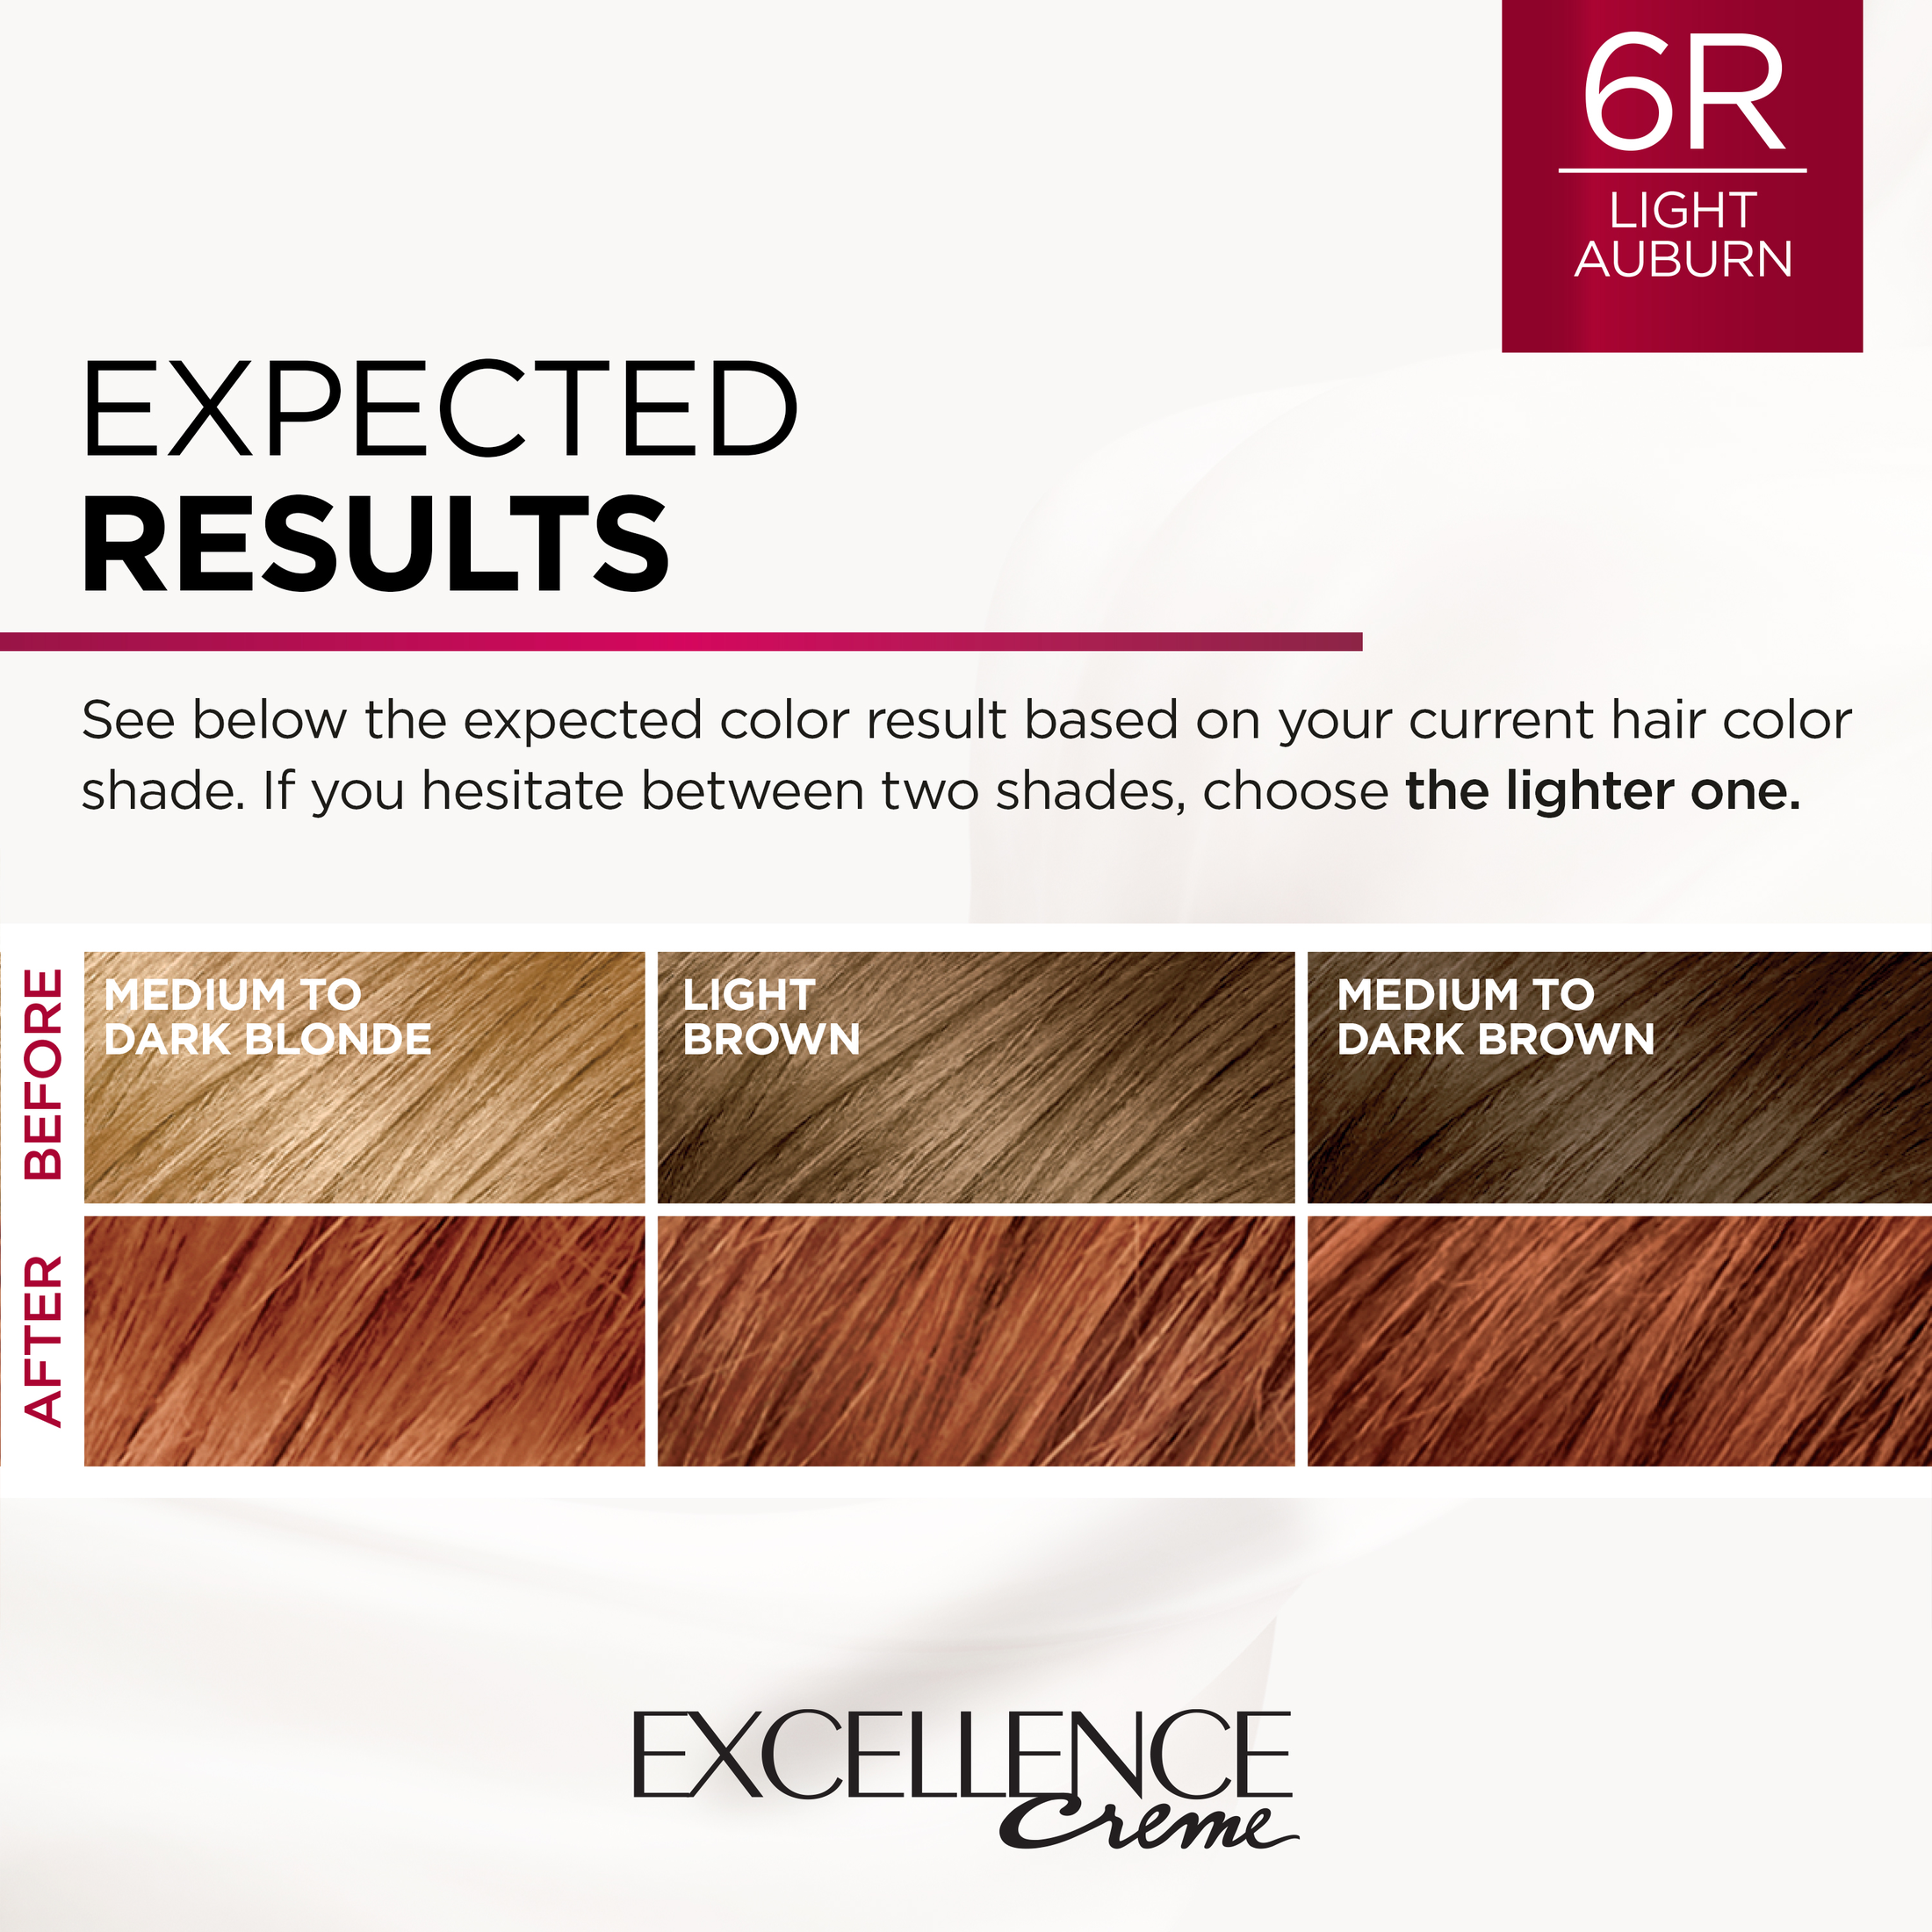 L'Oreal Paris Excellence Creme Permanent Hair Color, 6R Light Auburn - image 5 of 8